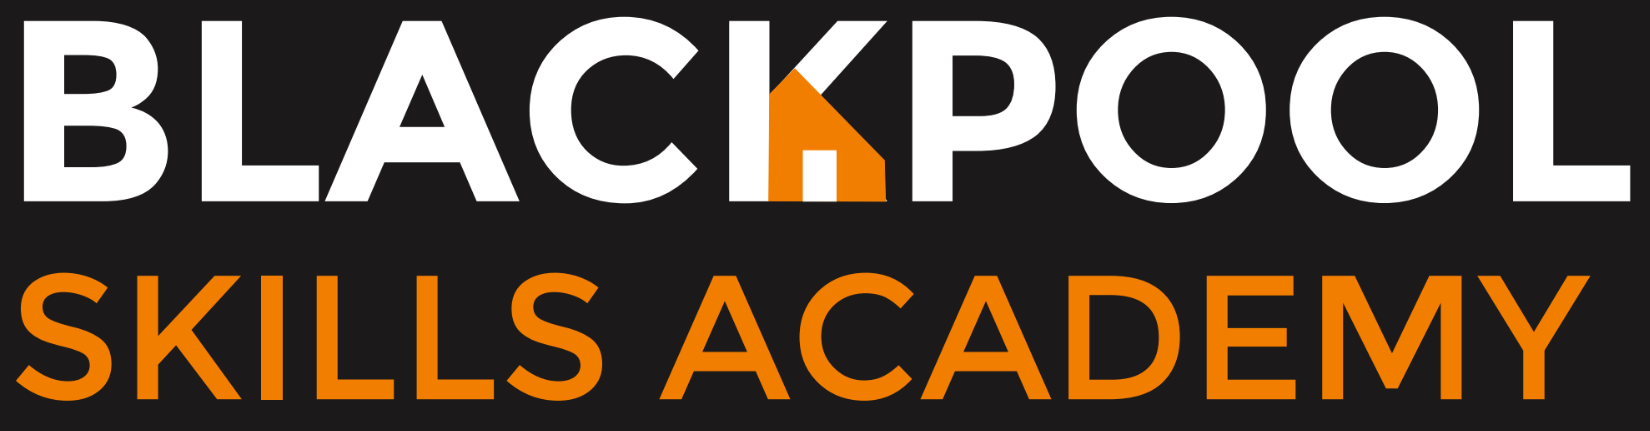 Blackpool Skills Academy